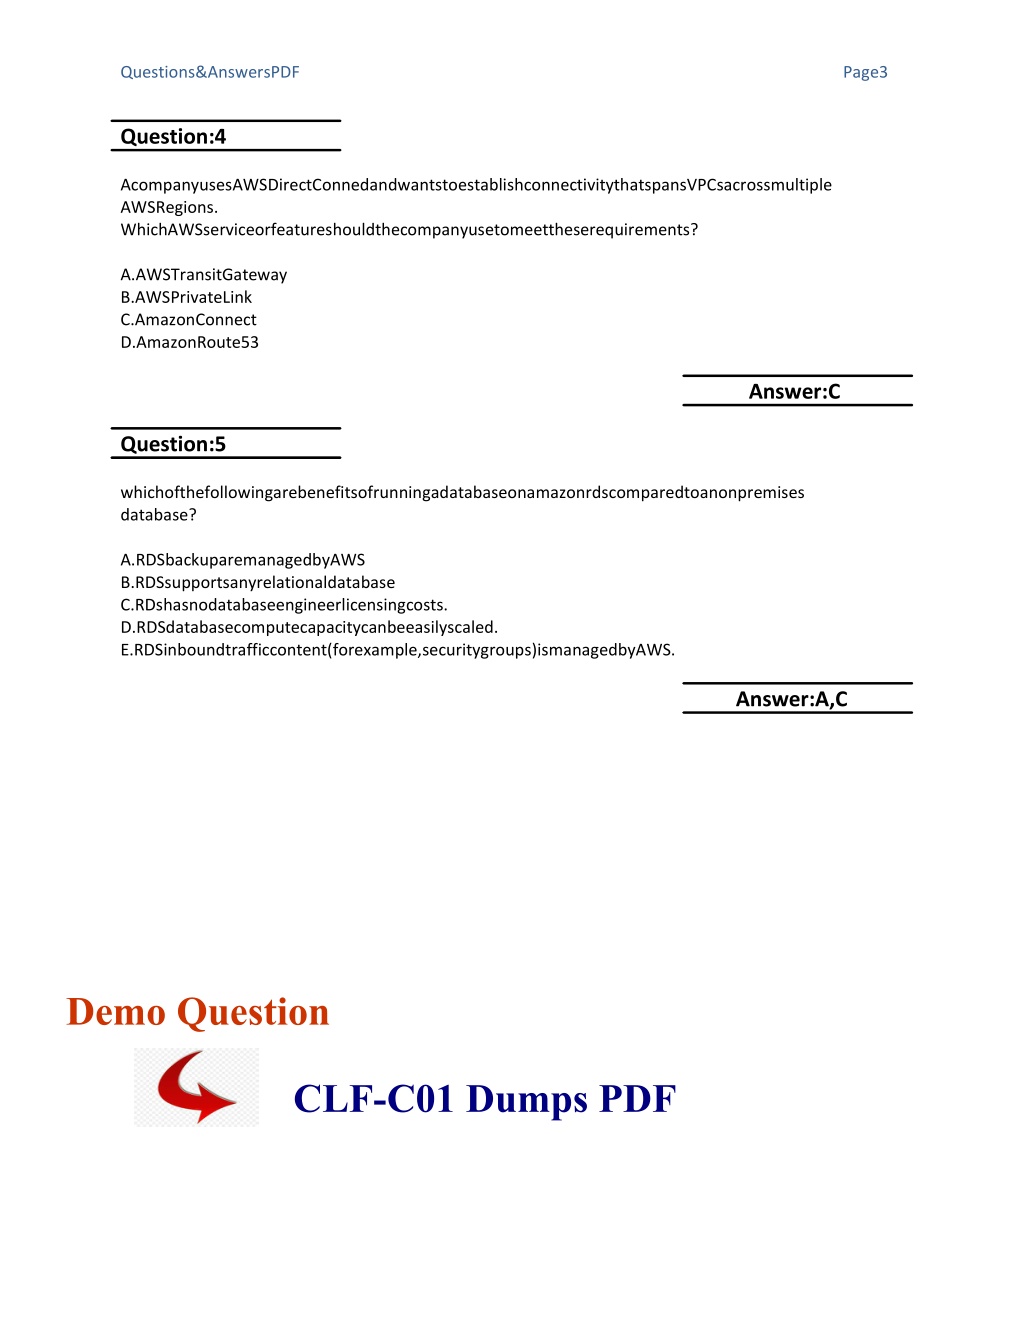 CLF-C01 Testfagen